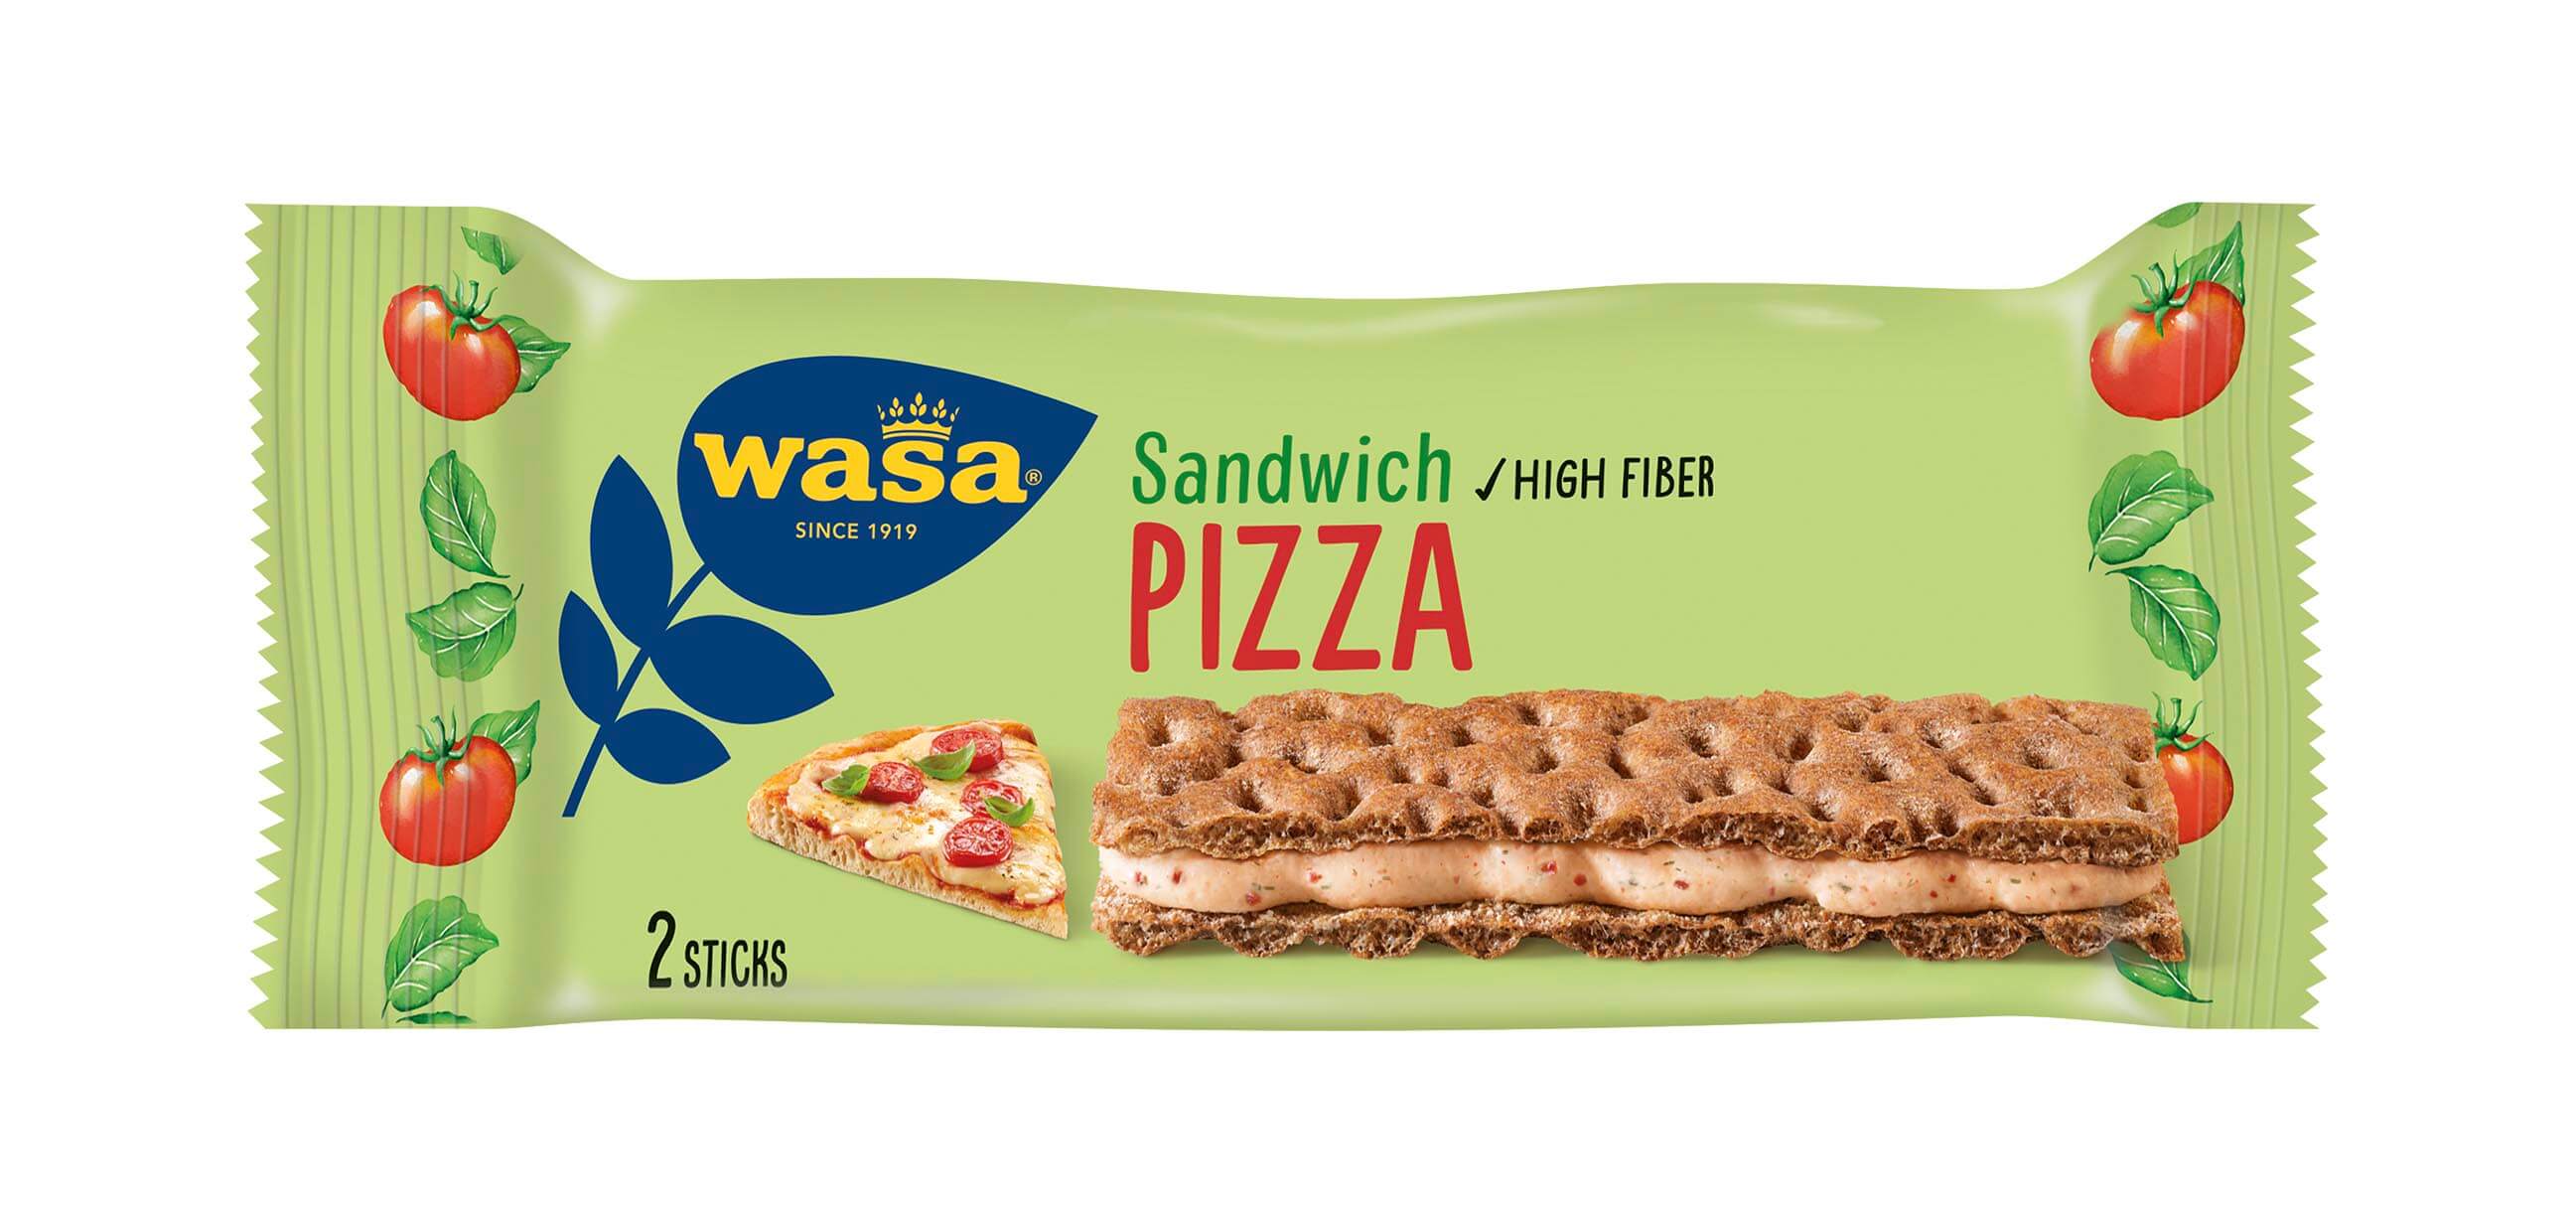 Wasa Sandwich Pizza - Upptäck det perfekta mellanmålet, krispigt och gott knäckebröd med krämig fyllning. Perfekt som mellanmål på språng och som goda mellanmål efter skolan eller innan träning.